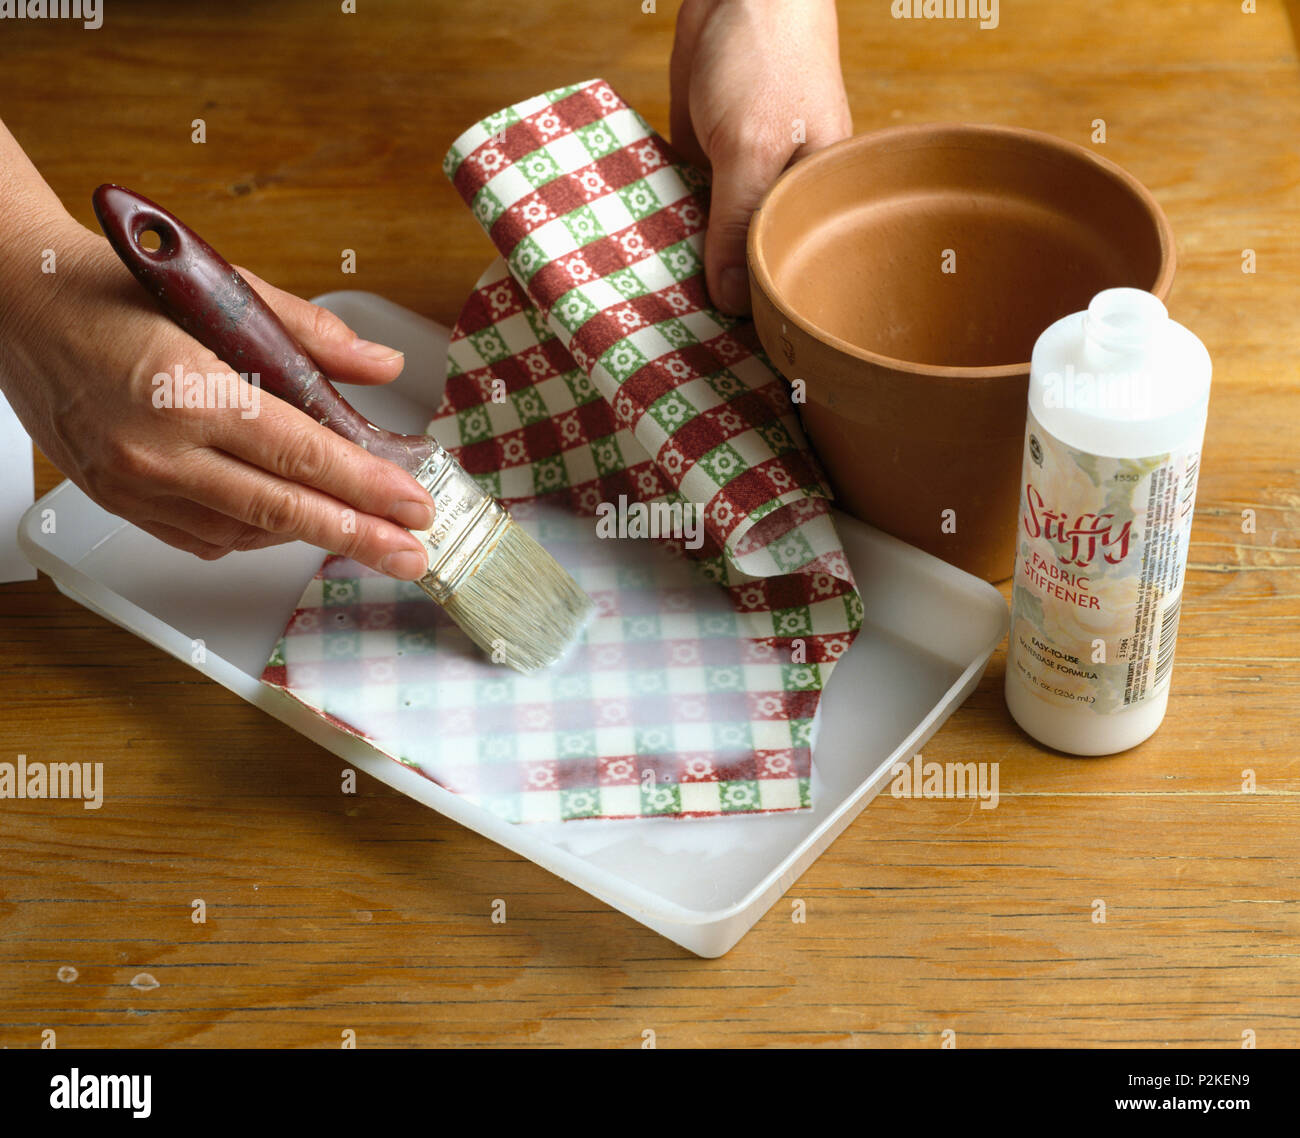 Nahaufnahme der Hand Auftragen von Leim überprüft Papier vor dem Kleben von  Kunststoff Blumentopf Hände einfügen Stoff Versteifung auf gewebe  Stockfotografie - Alamy